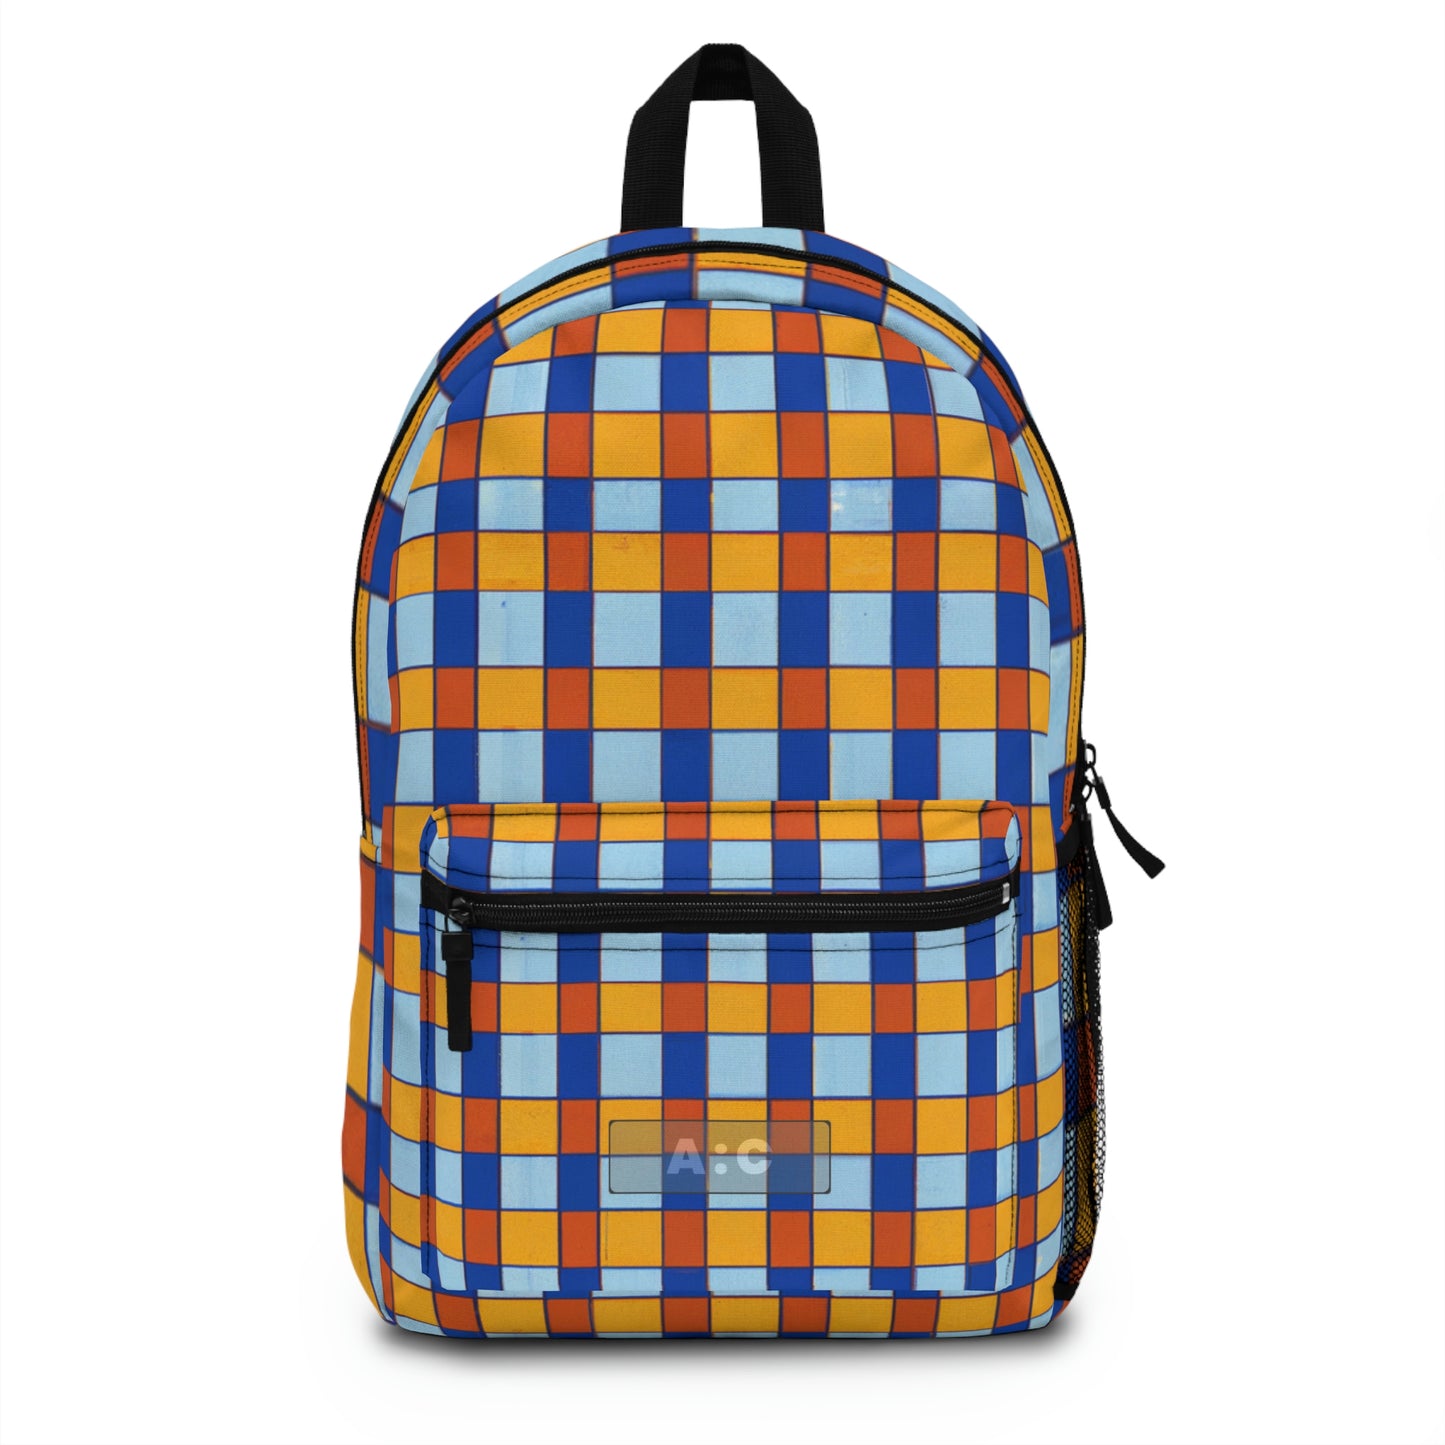 Jan Vermeer - Backpack